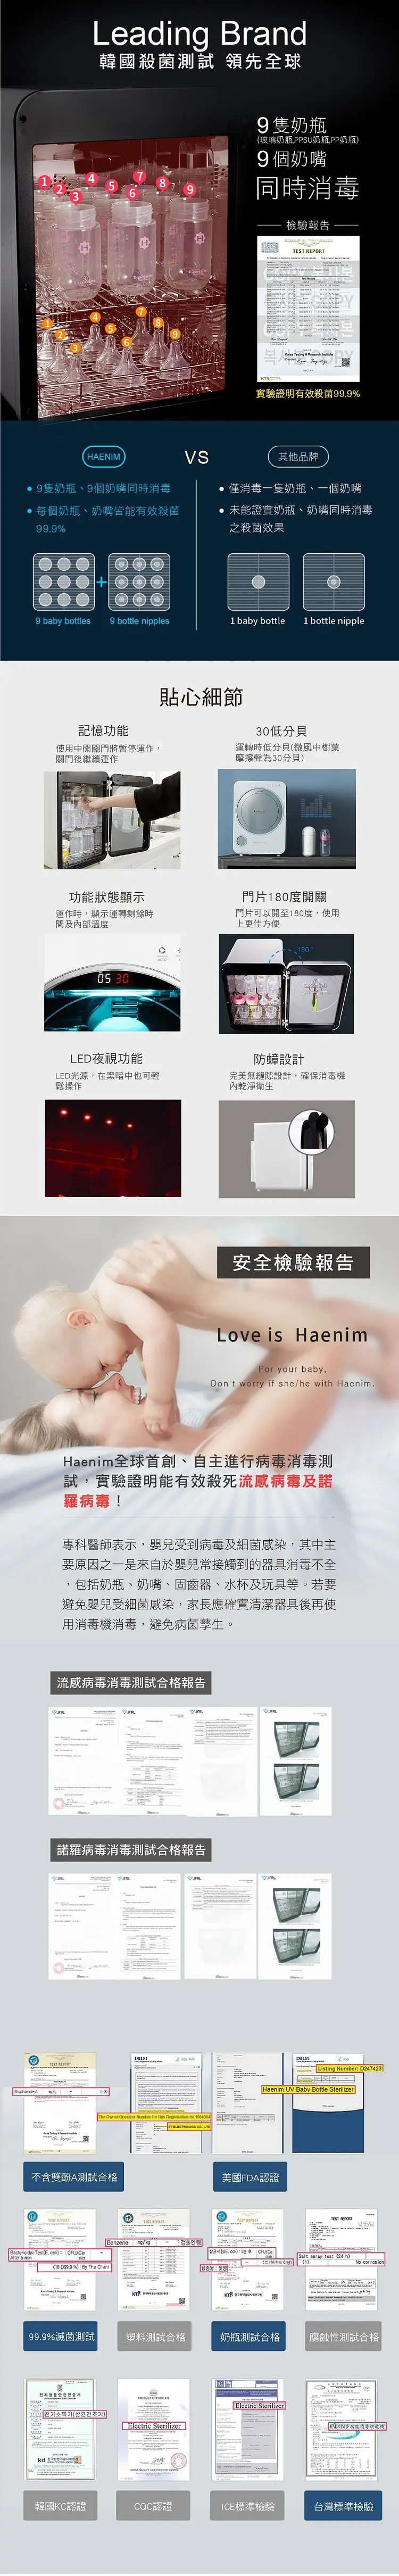 Haenim喜临 第3代紫外线UV消毒烘乾机